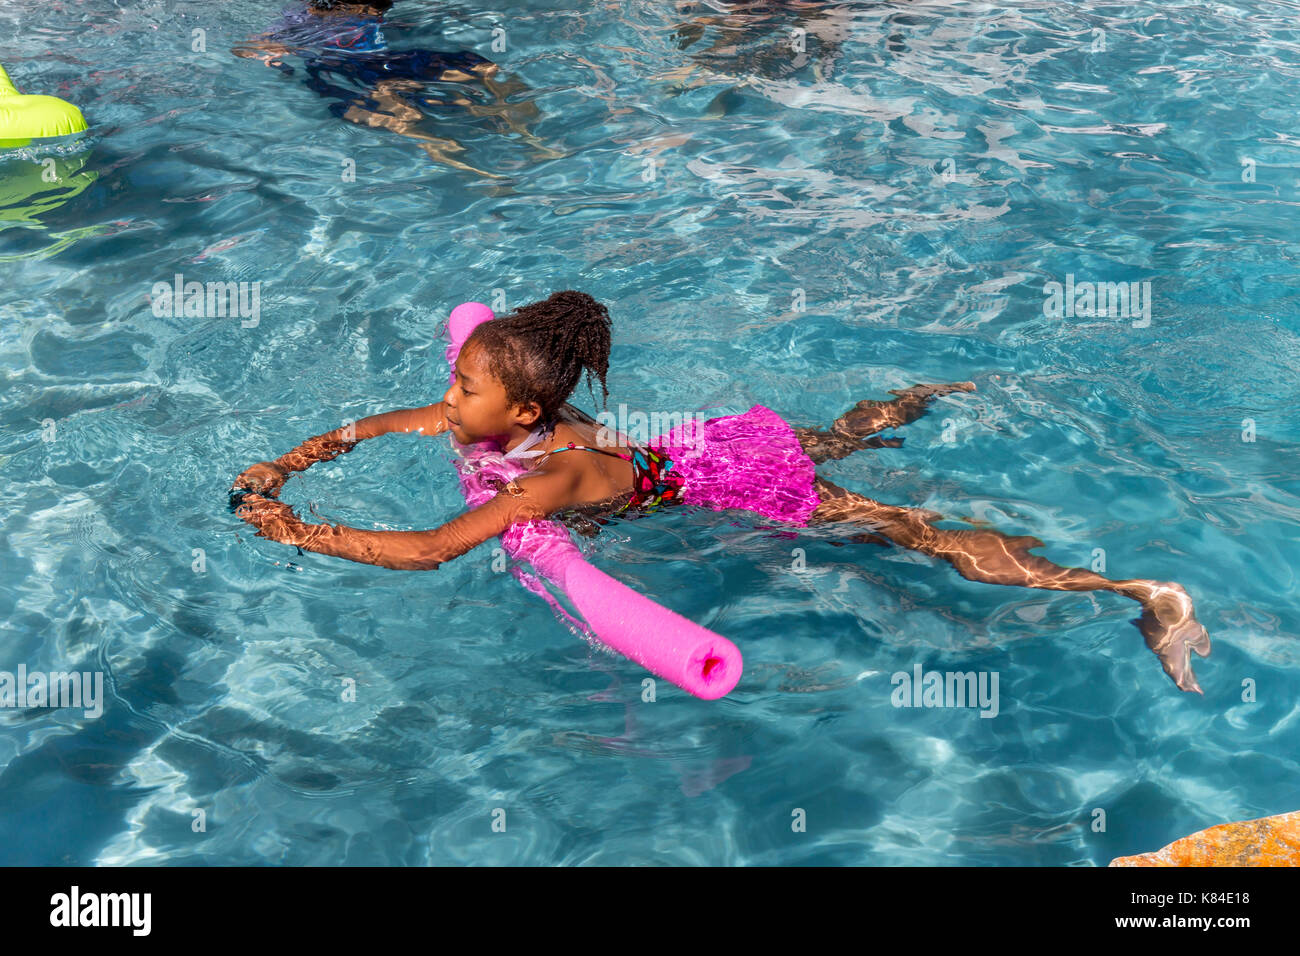 African-American Girl, nuotatore, nuoto, piscina, piscina di acqua dolce, Castro Valley, contea di Alameda, California, Stati Uniti Foto Stock